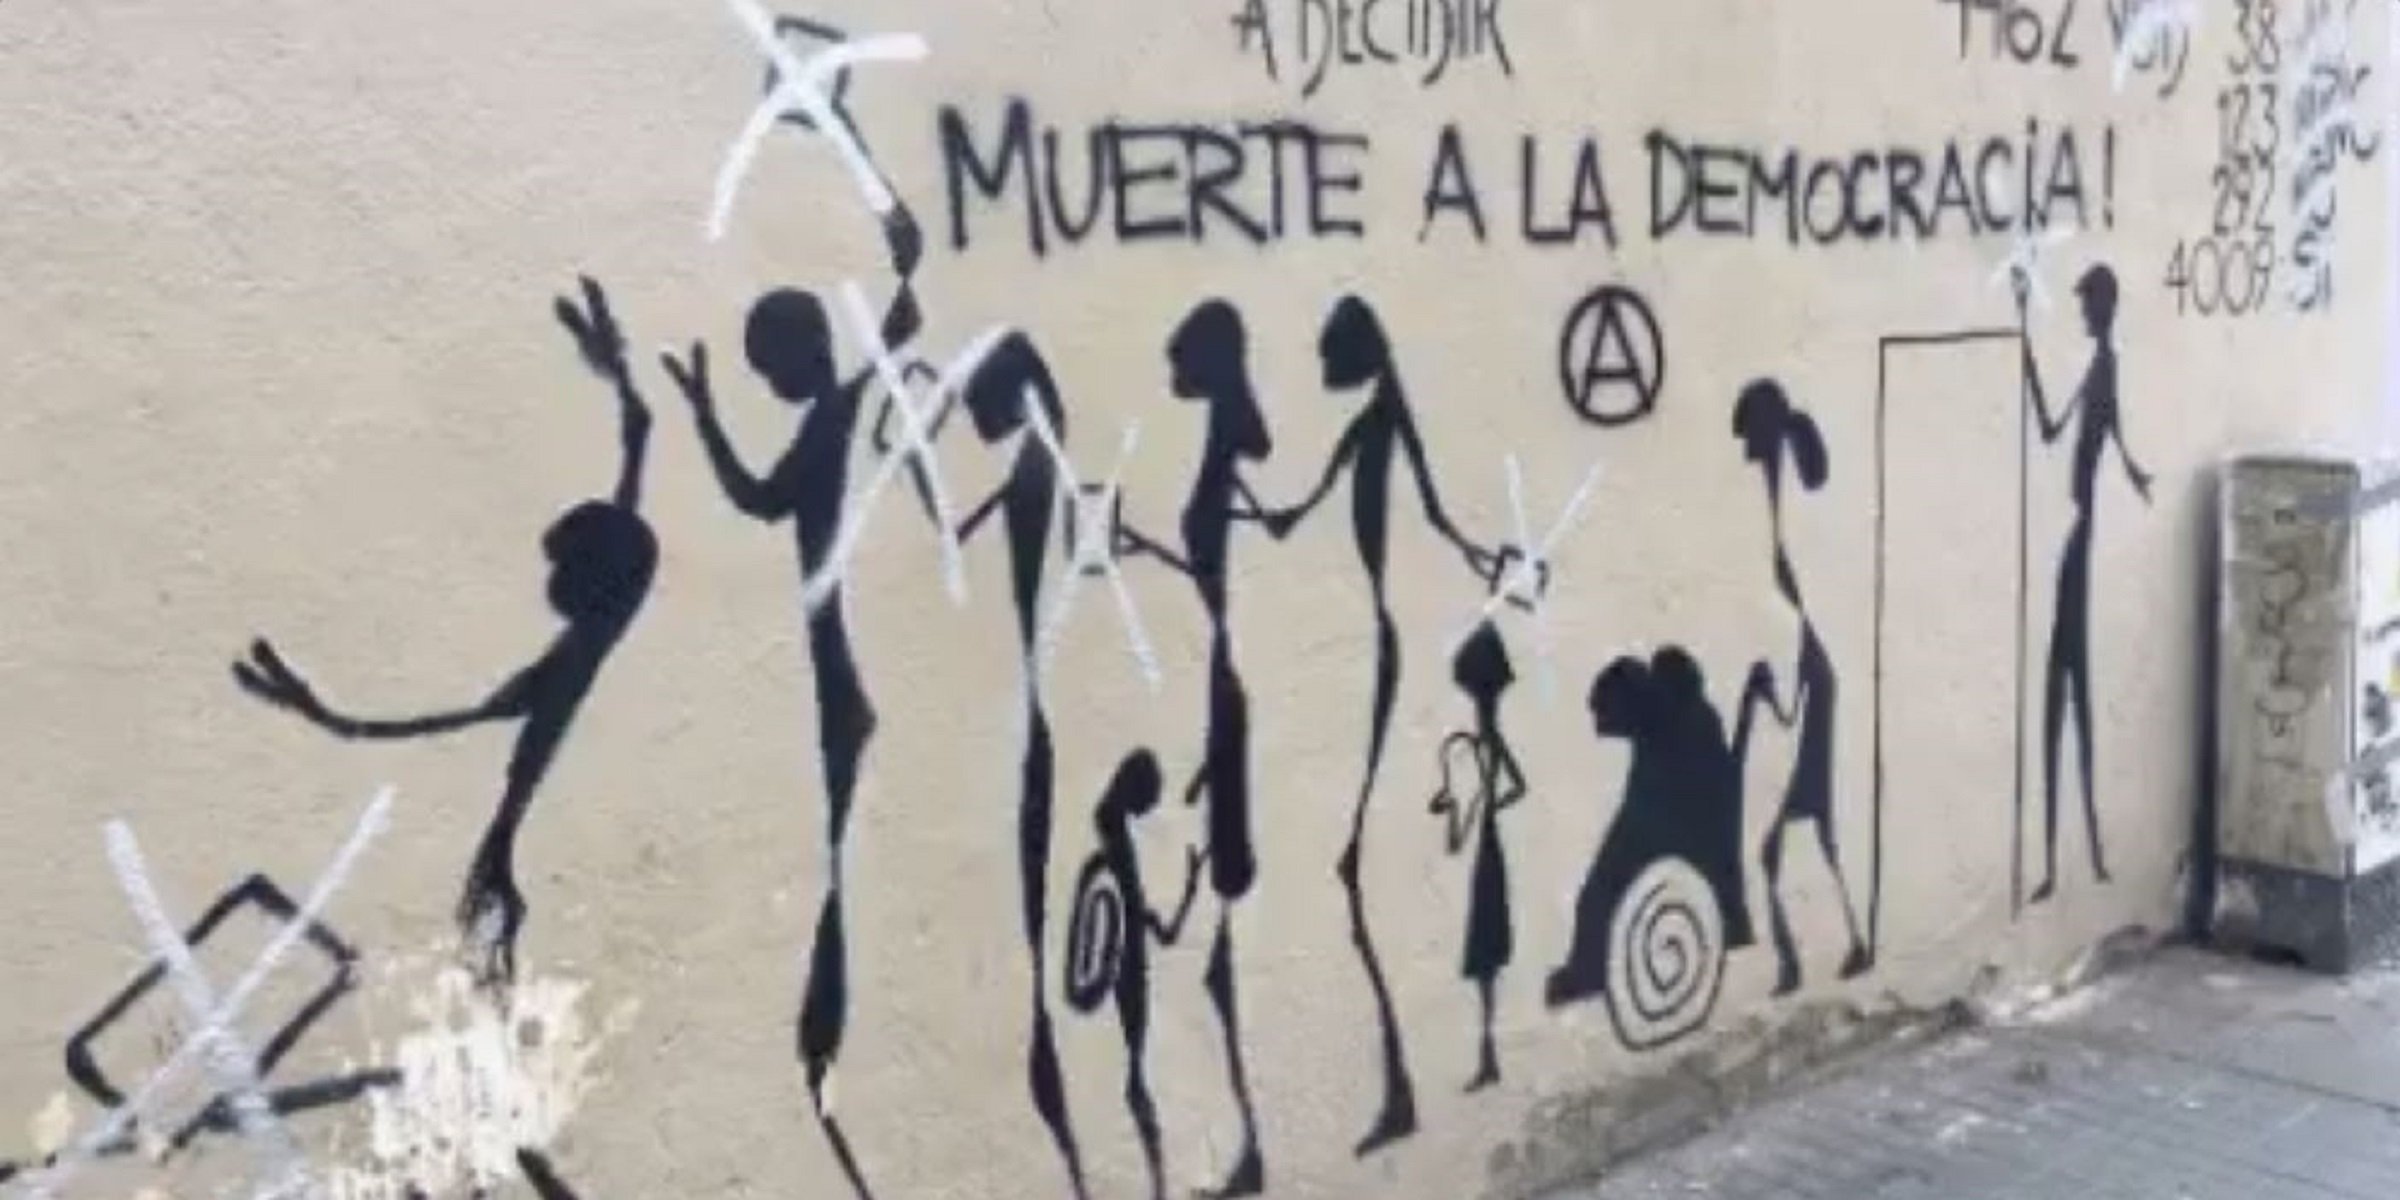 Ataquen un mural de l'1-O a Sant Andreu: "Muerte a la democracia"